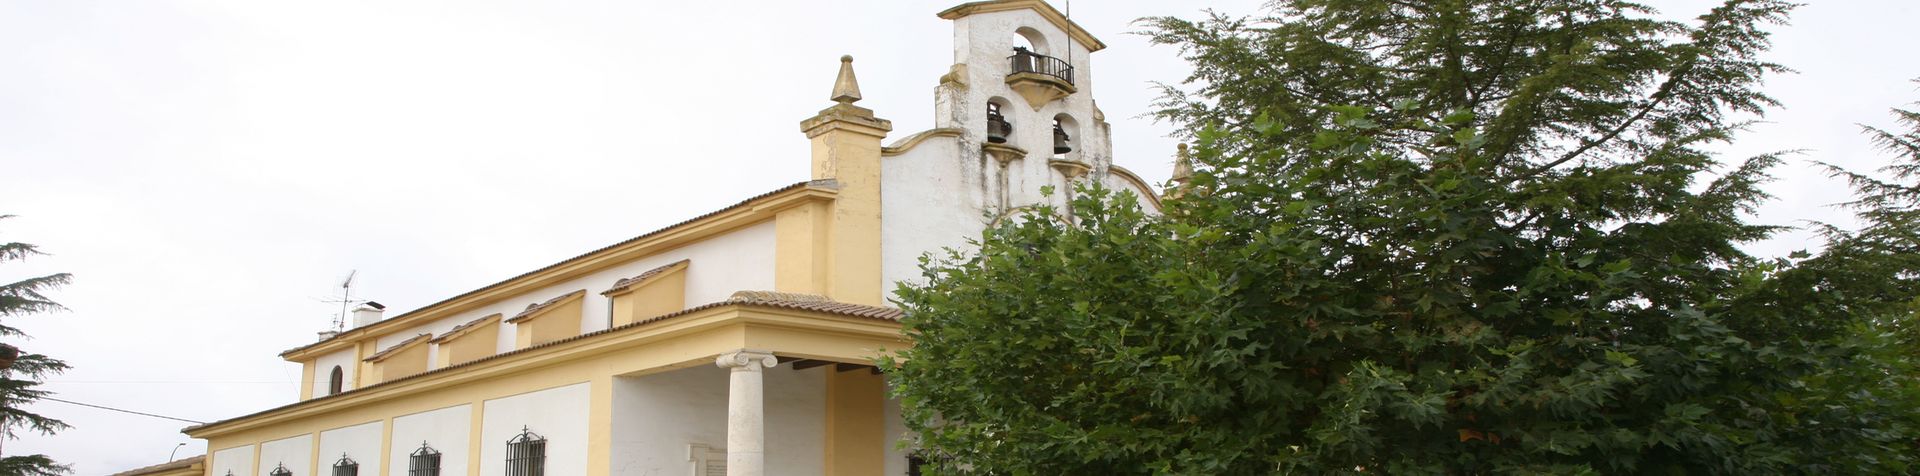 Iglesia Santa Columba Cervatos de la Cueza